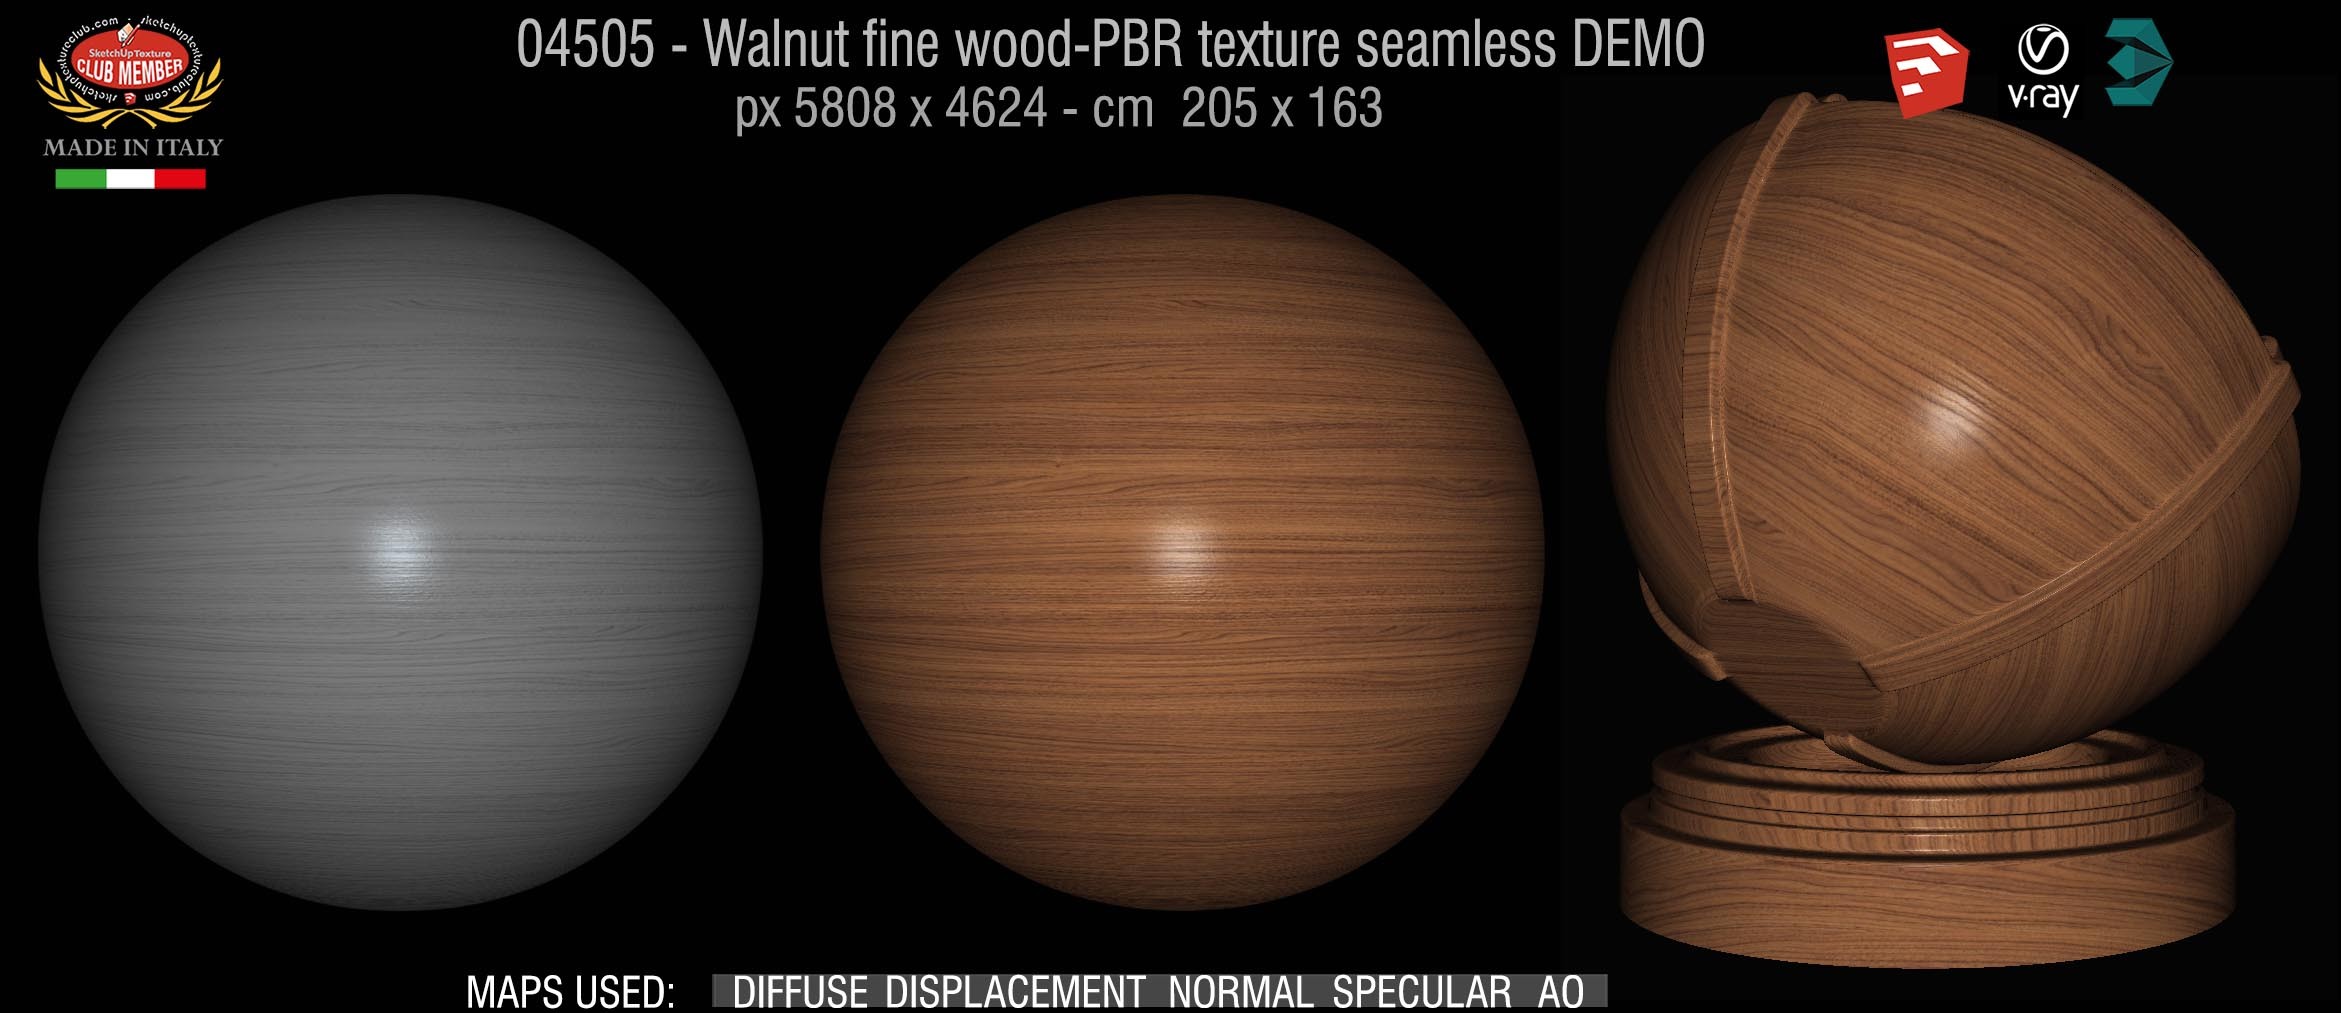 04506 Walnut fine wood medium PBR texture seamless DEMO